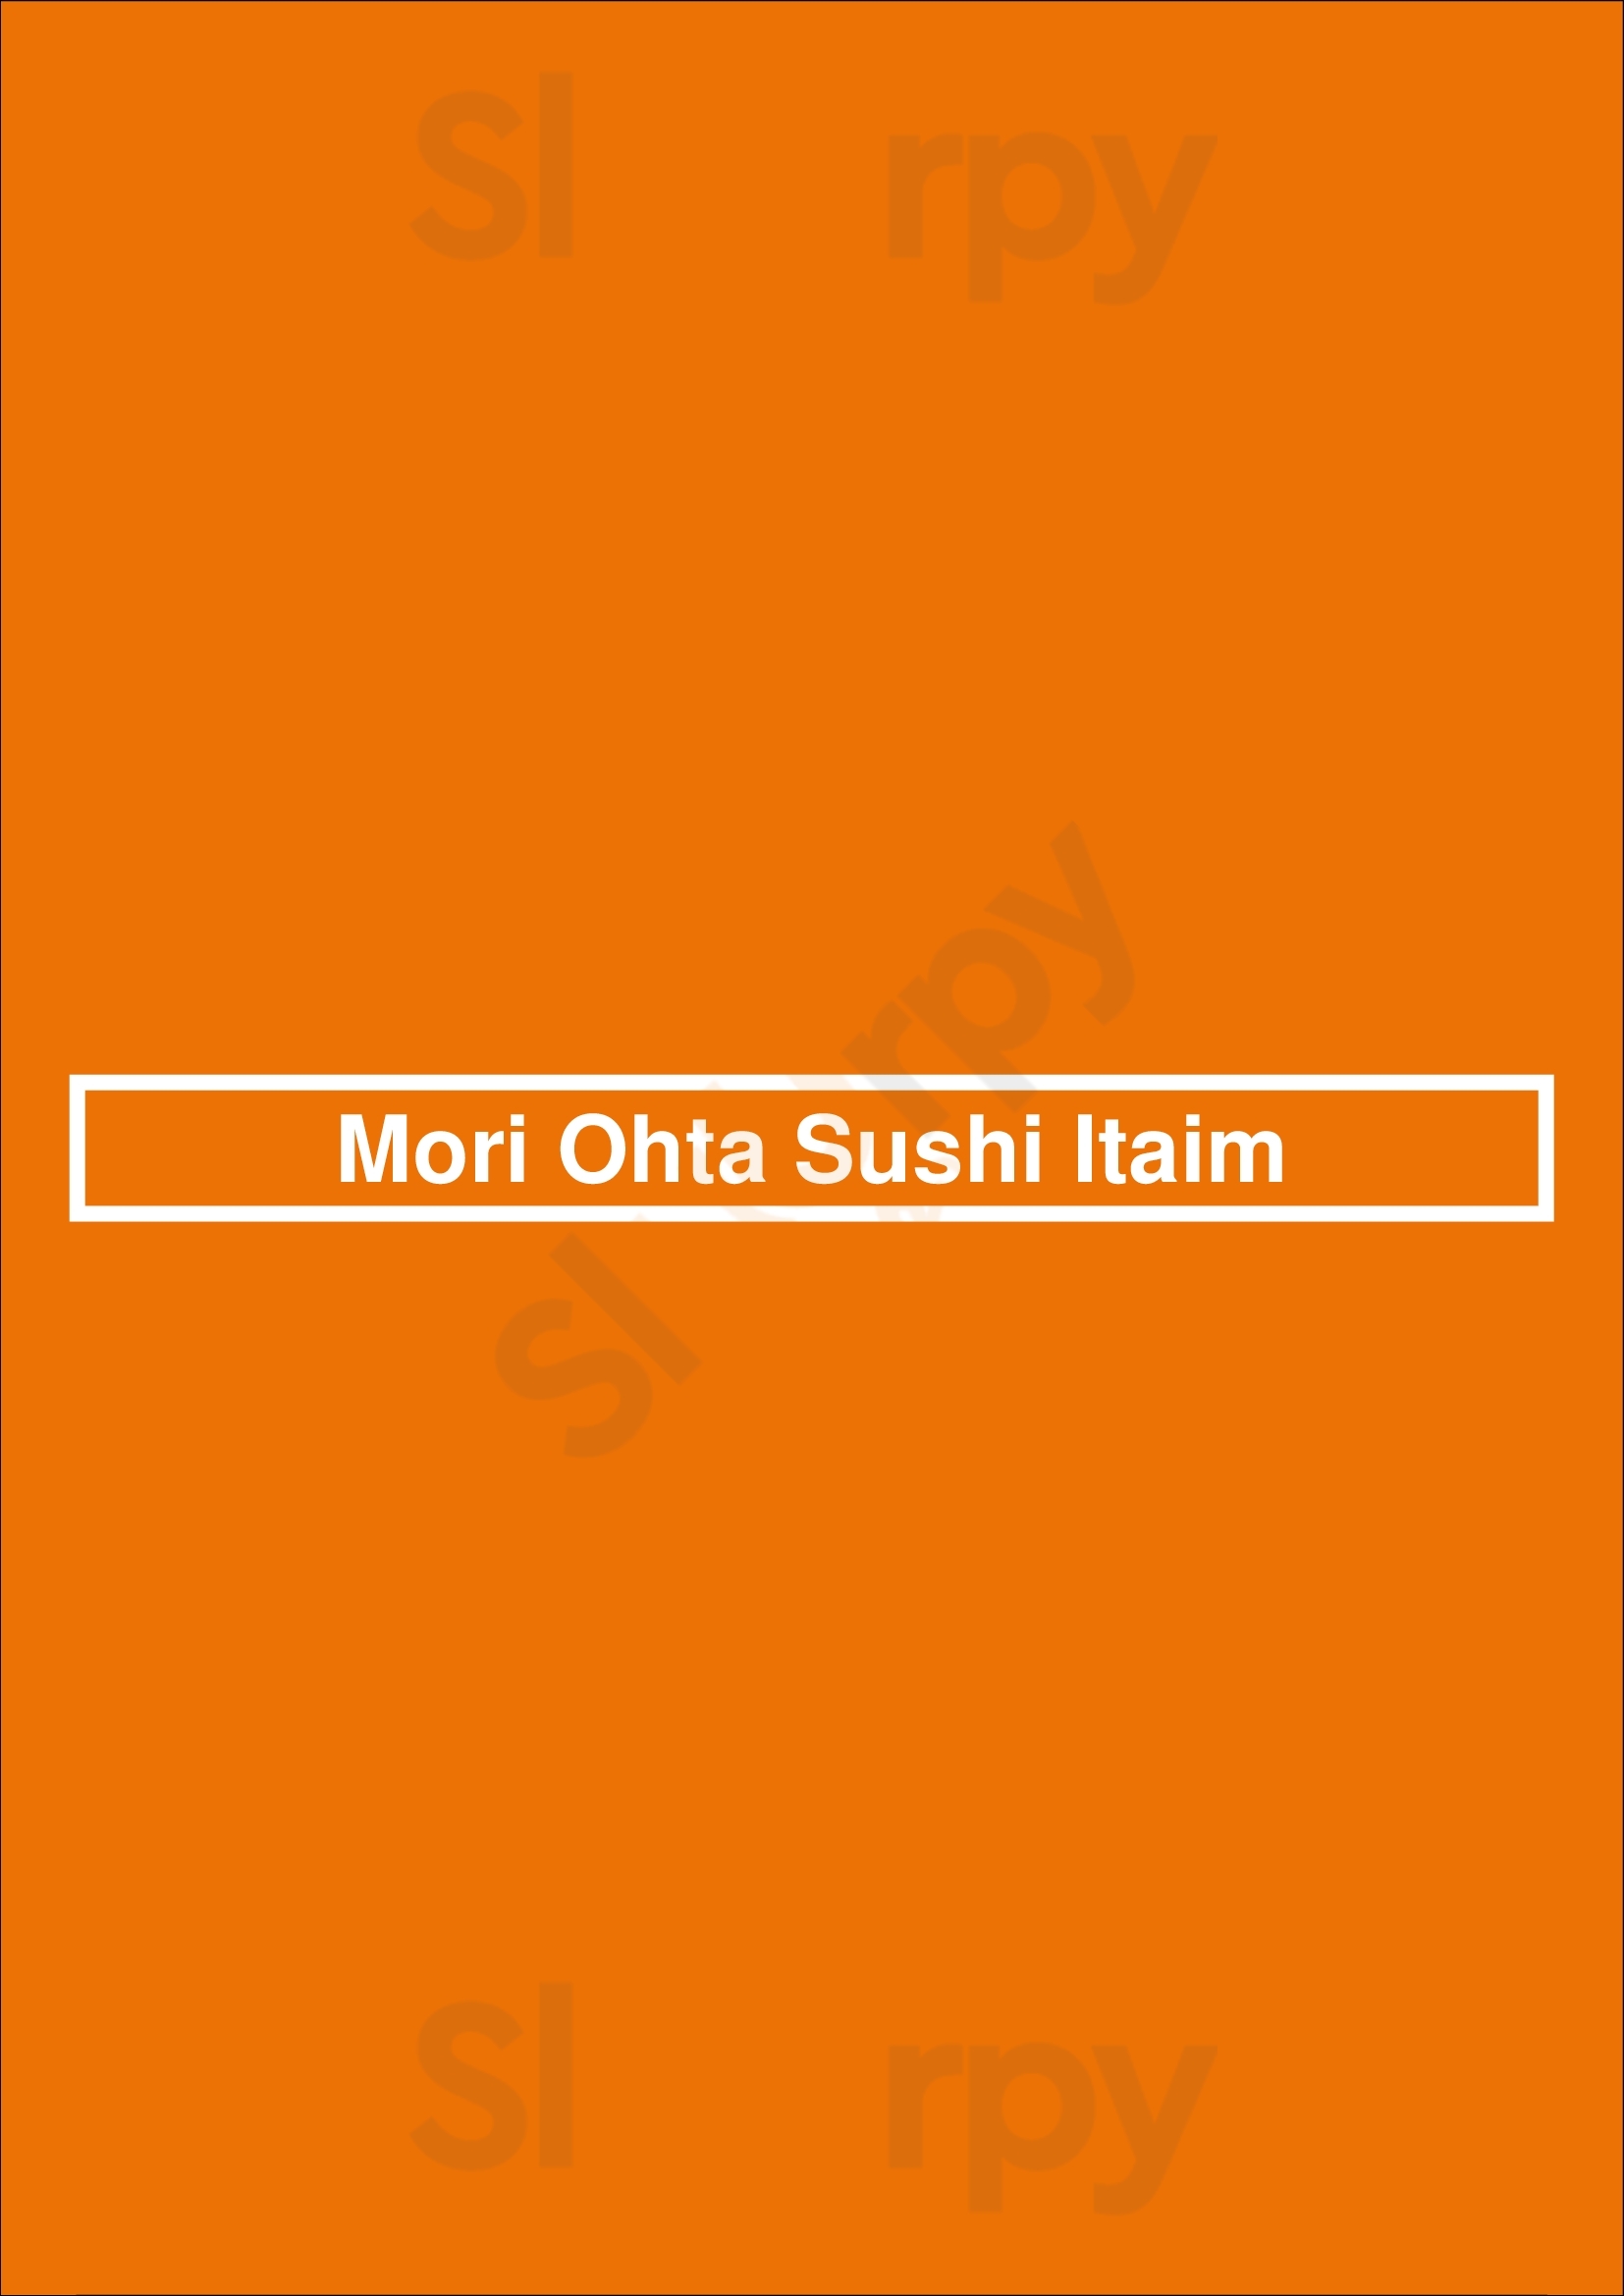 Mori Ohta Sushi Itaim São Paulo Menu - 1